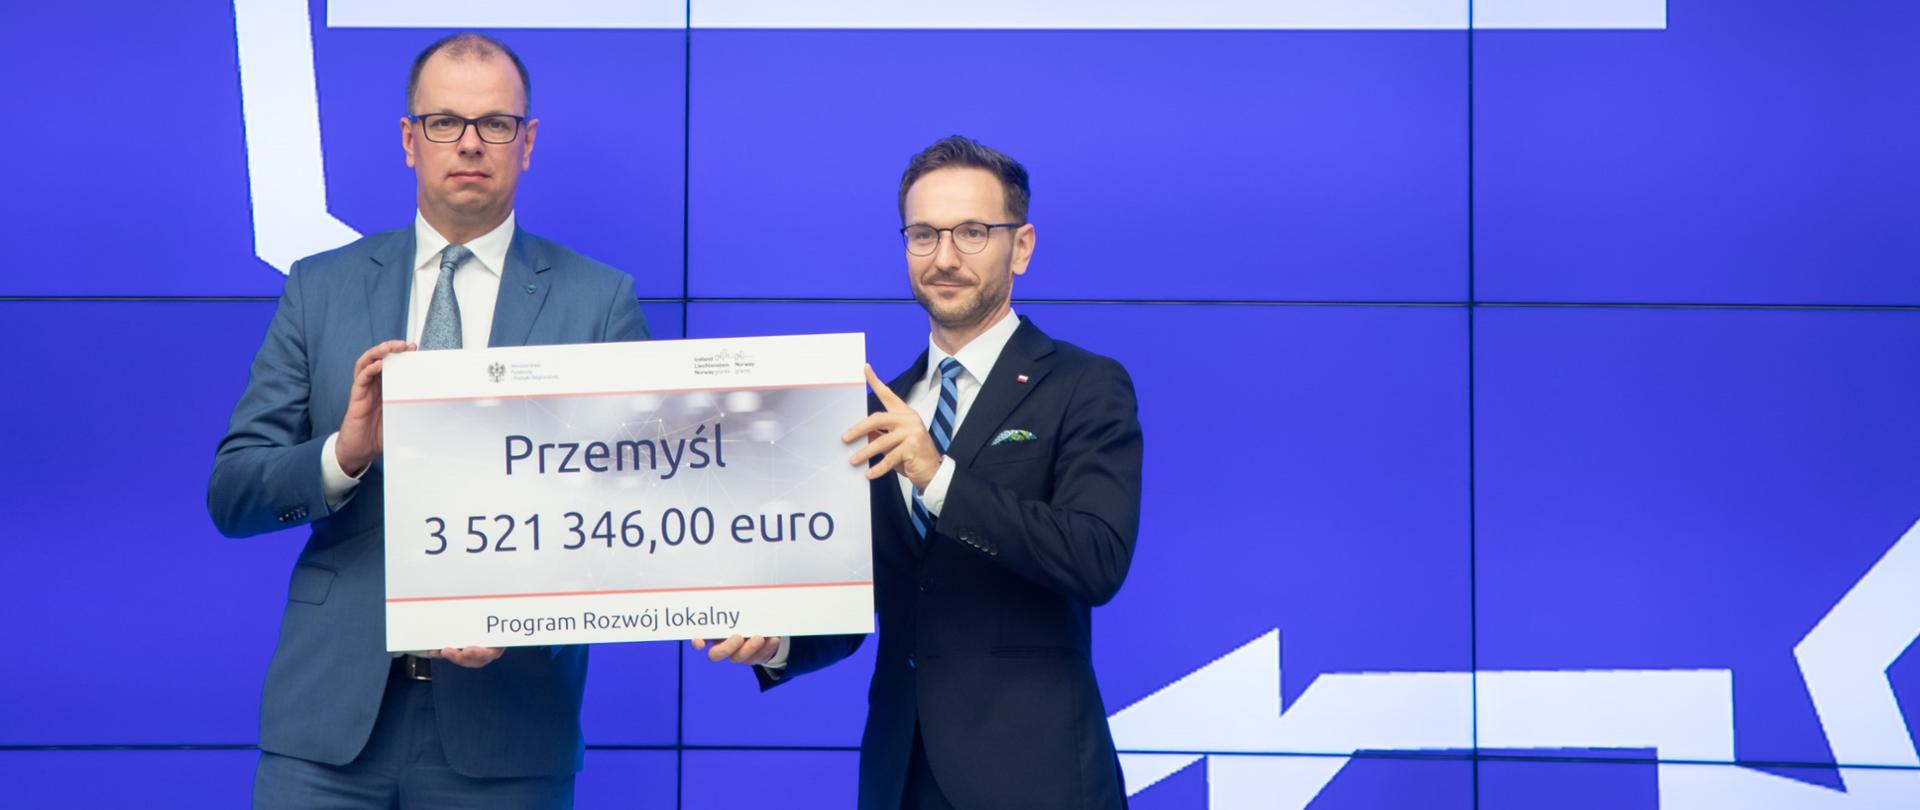 Od lewej prezydent miasta Przemyśl i wiceminister Waldemar Buda trzymają wspólnie czek z napisem: "Przemyśl 3 521 346,00 euro".